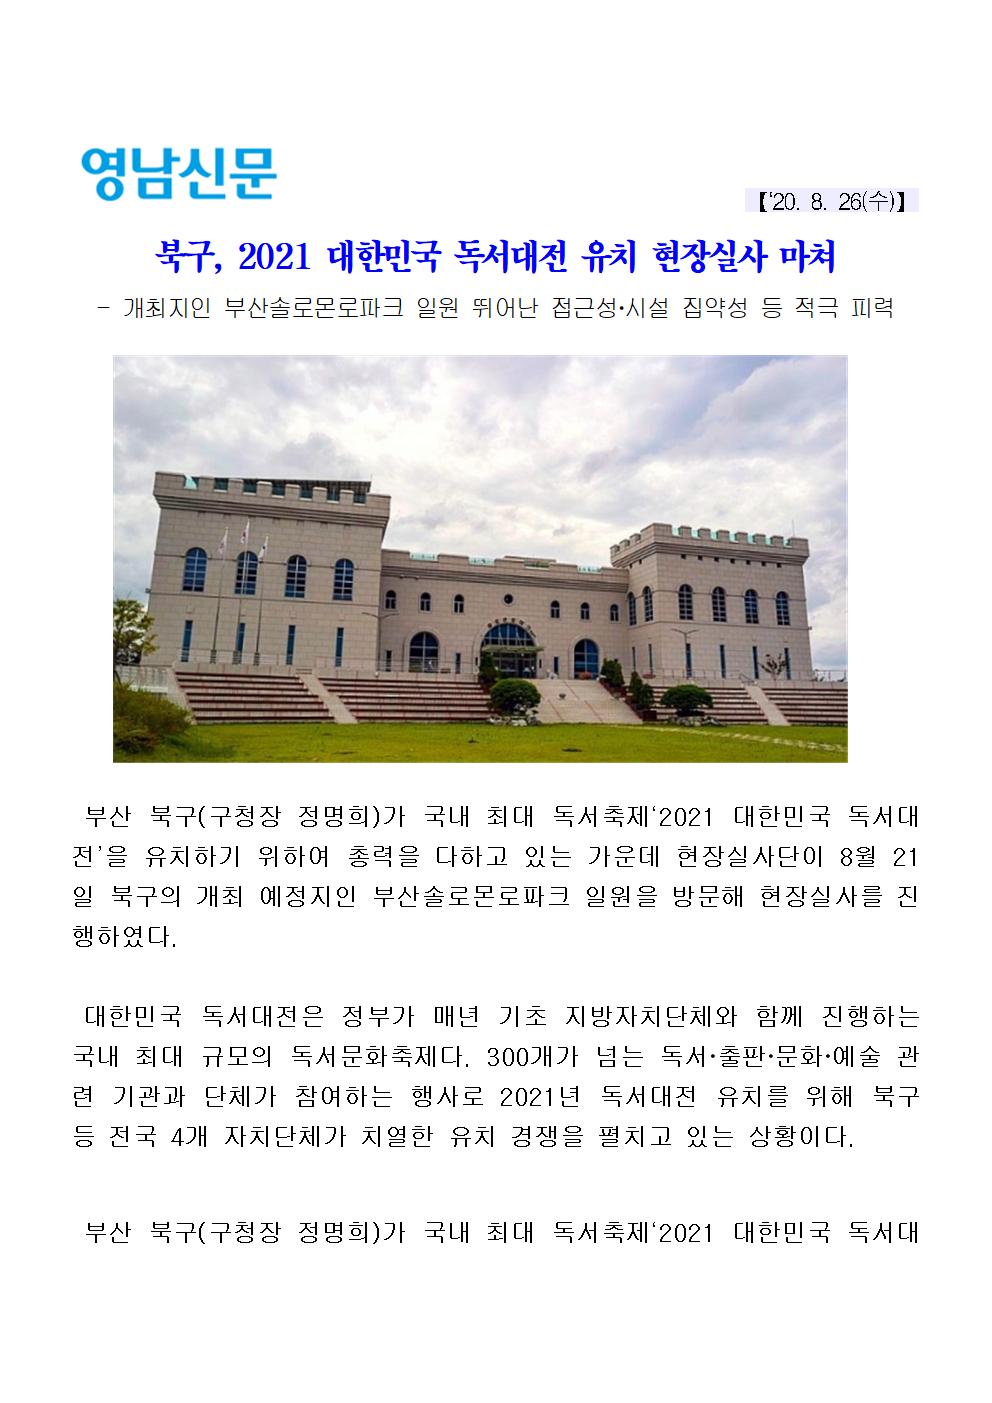 (20.08.26) 북구, 20201 대한민국 독서대전 유치 현장실사 마쳐(3-1-9)